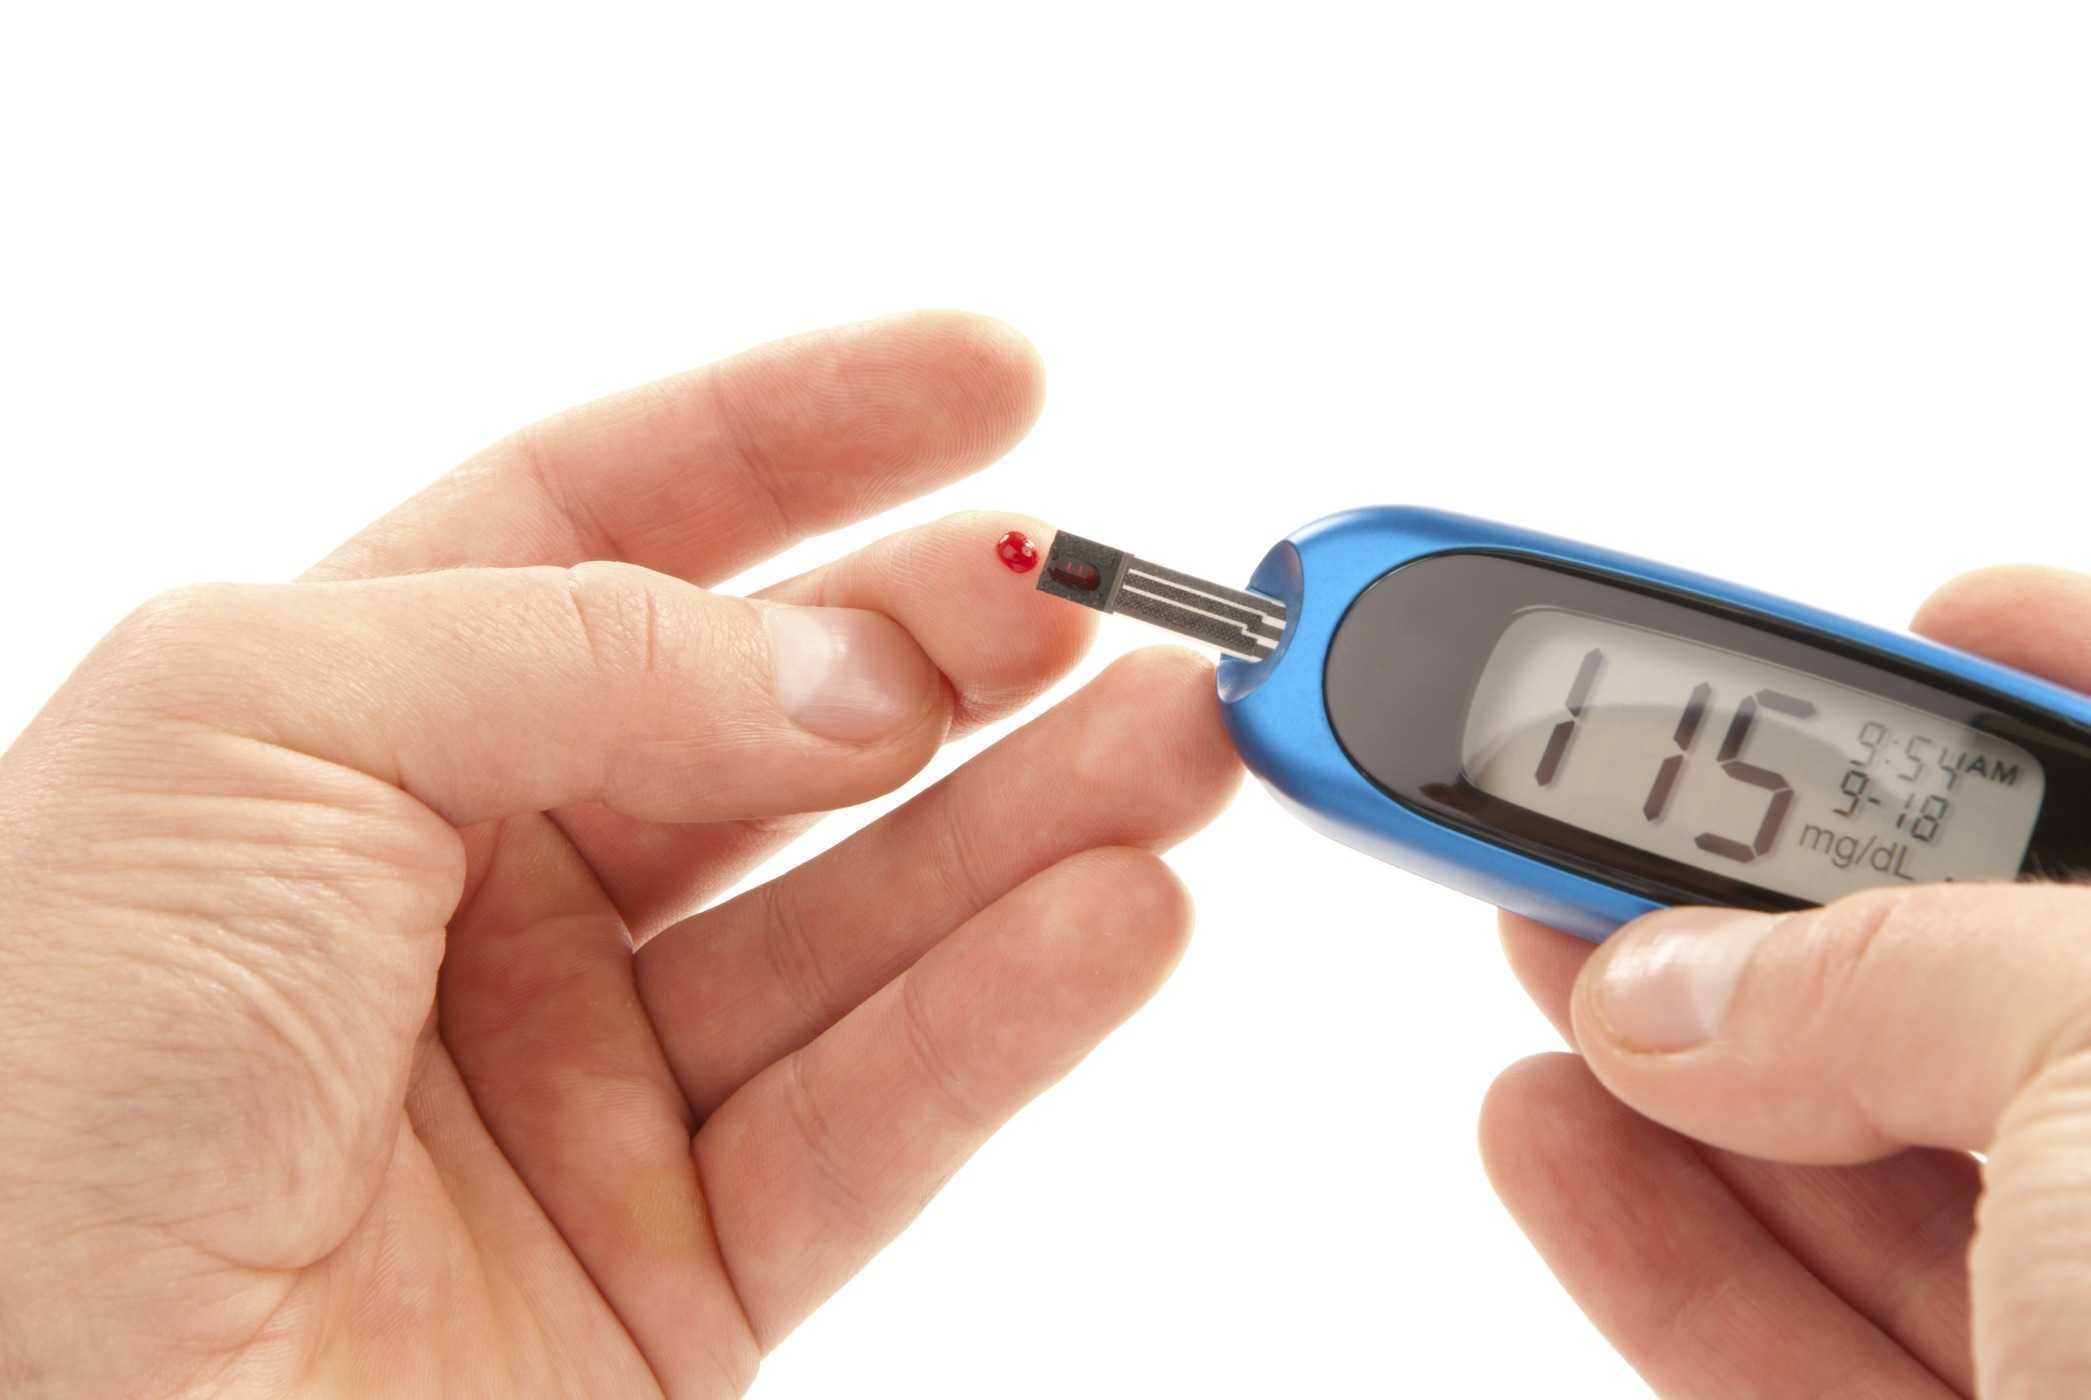   5 cách phòng ngừa biến chứng bệnh tiểu đường: đo huyết áp, chăm sóc đôi chân mỗi ngày  